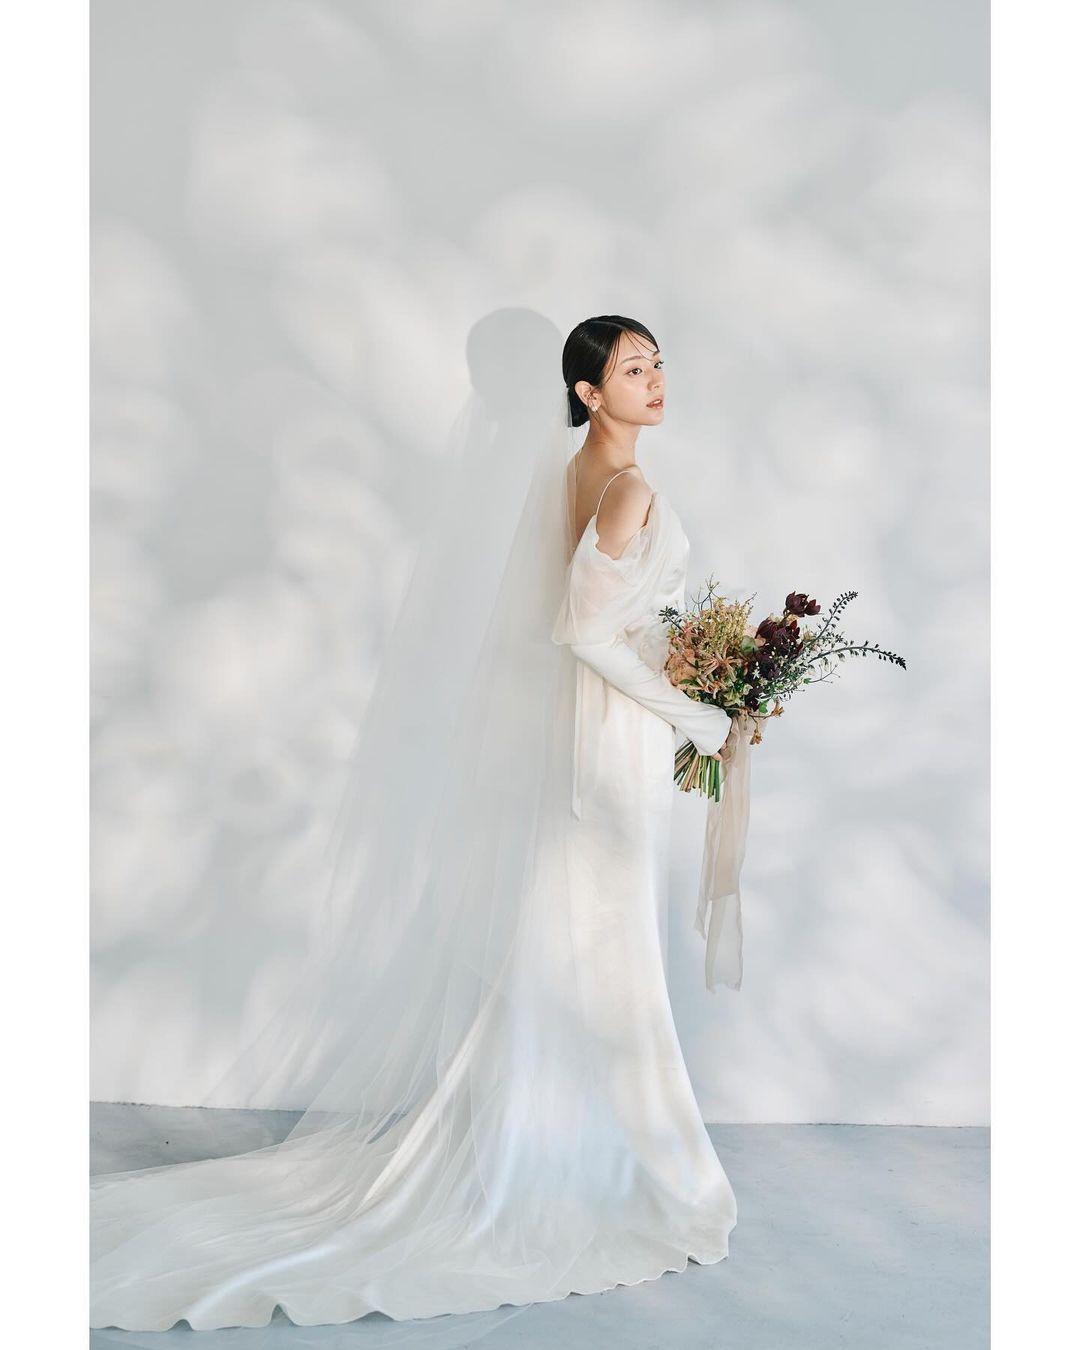 貴島明日香 「究極の美の形」ウェディングフォトを公開　美しすぎるドレスの姿に賞賛の声